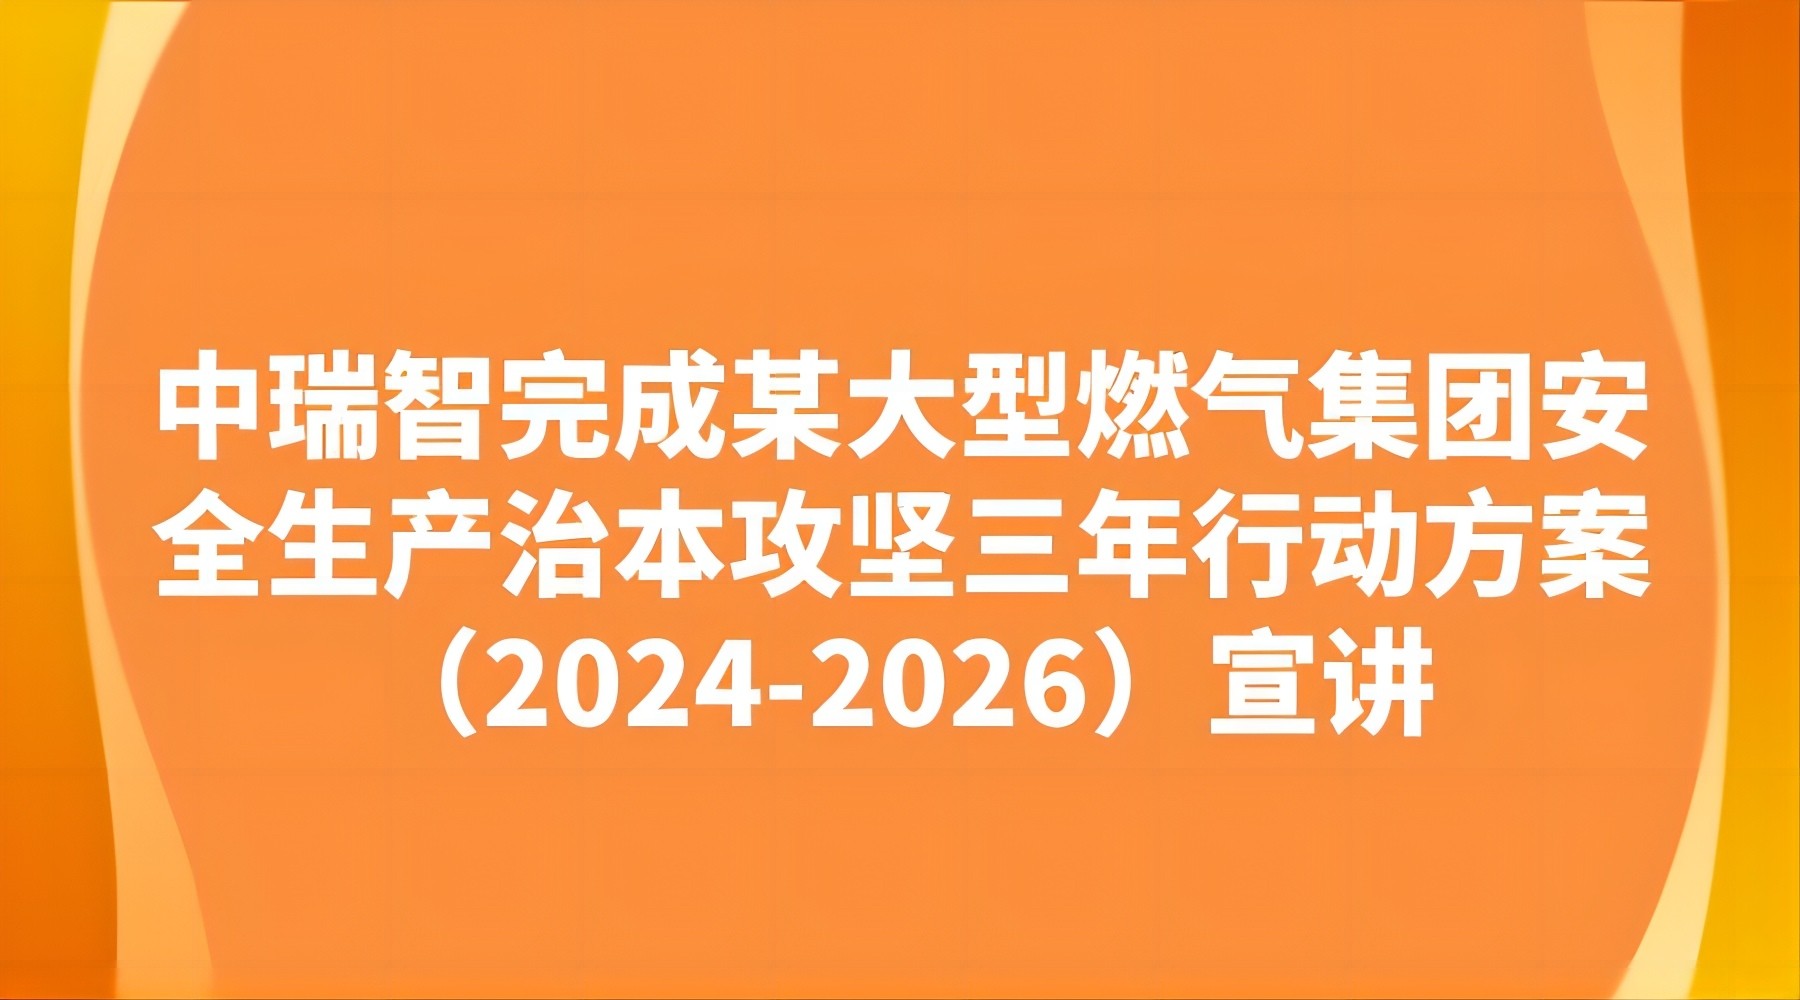 中瑞智完成某大型燃气集团安全生产治本攻坚三年行动方案（2024-2026）宣讲